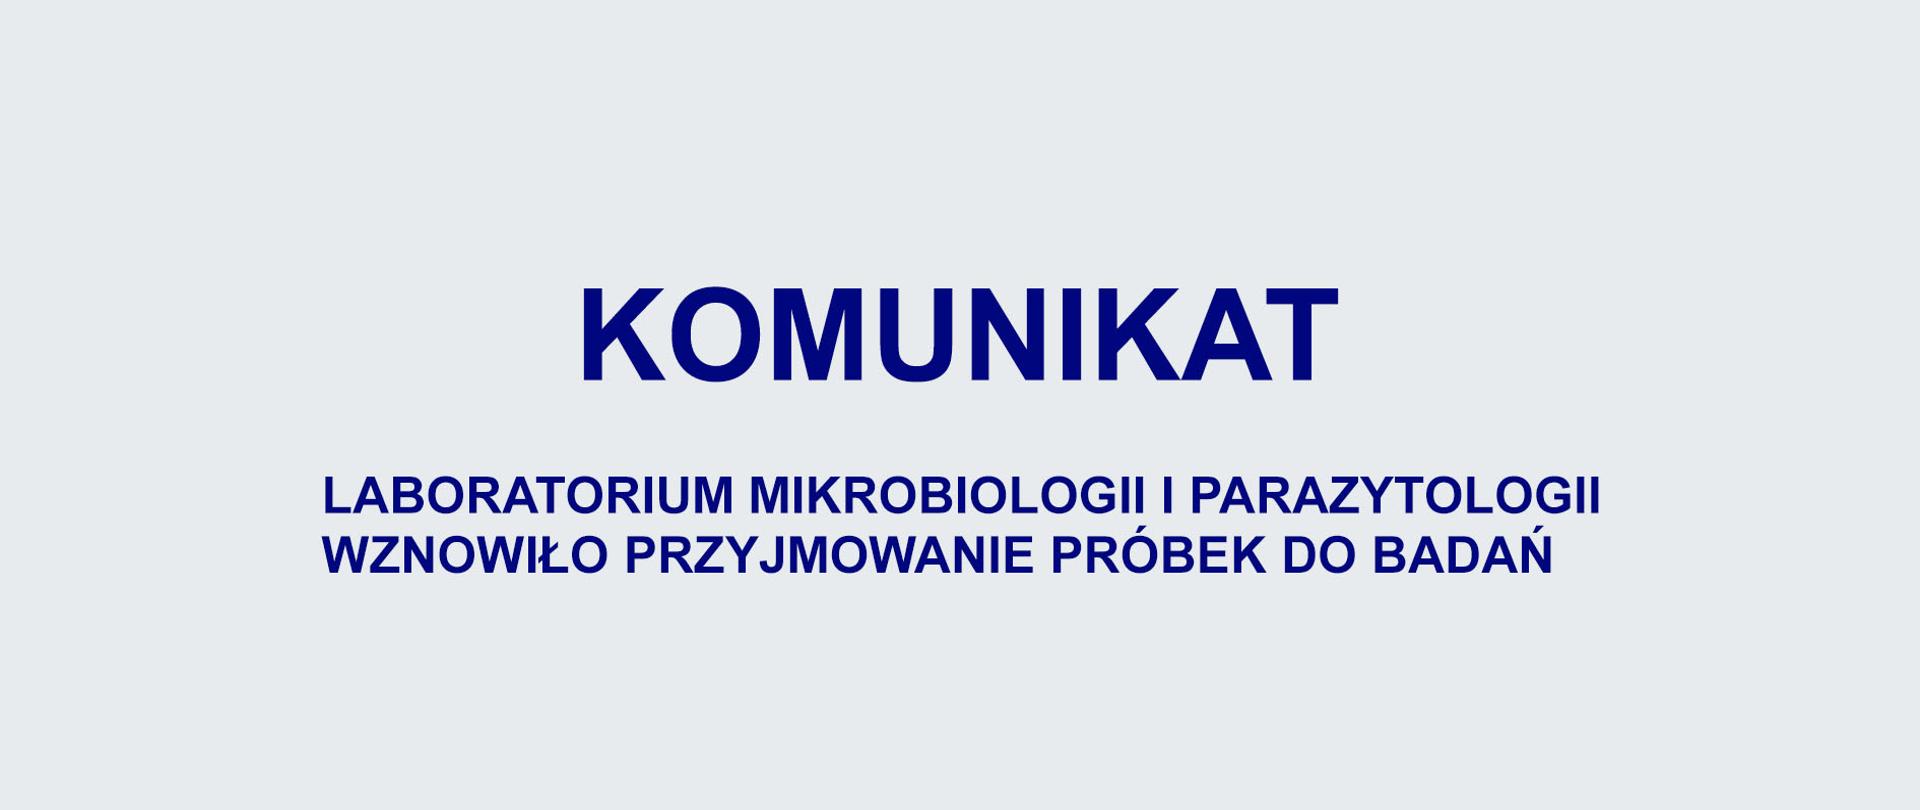 Baner z informacją o wznowieniu przyjmowania próbek do badań w laboratorium mikrobiologii i parazytologii